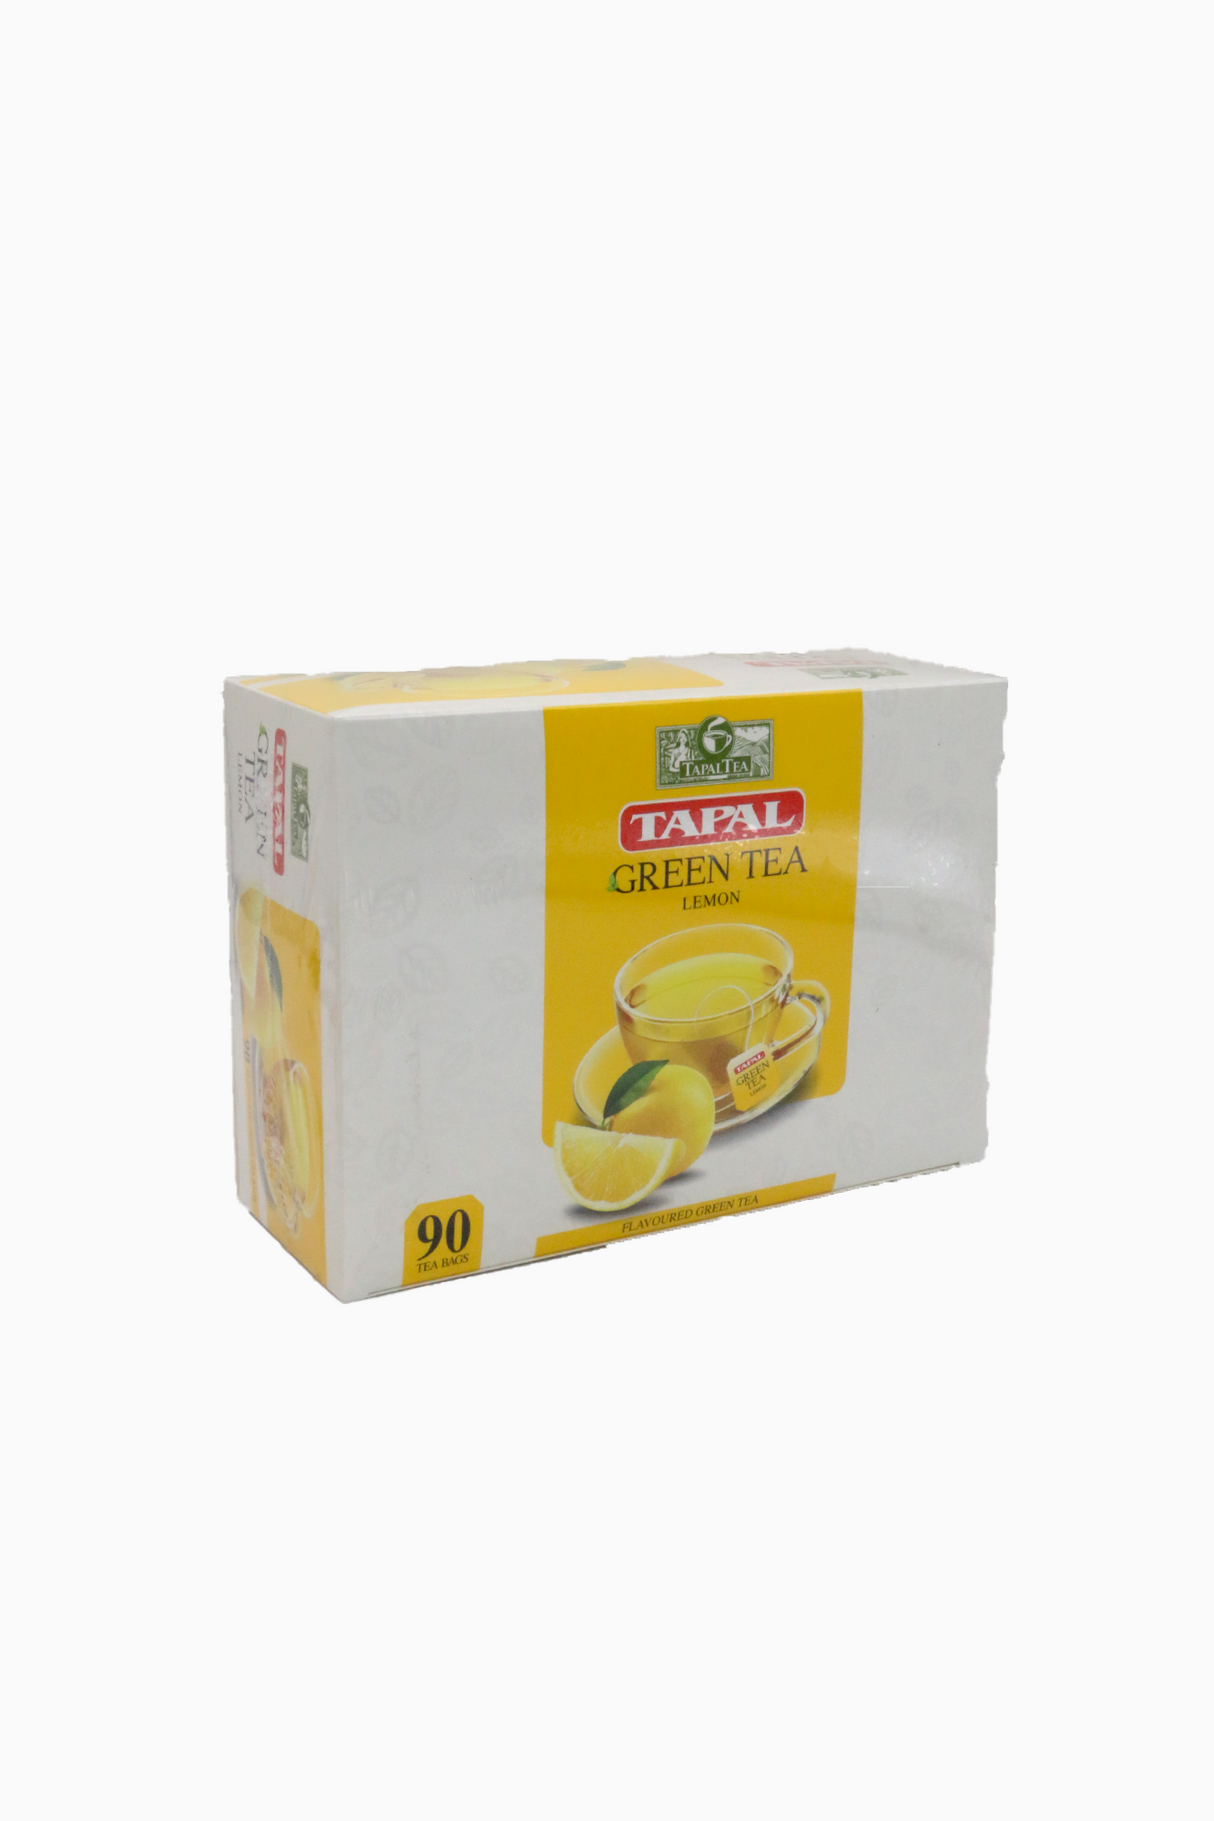 tapal green tea lemon 90tea bags